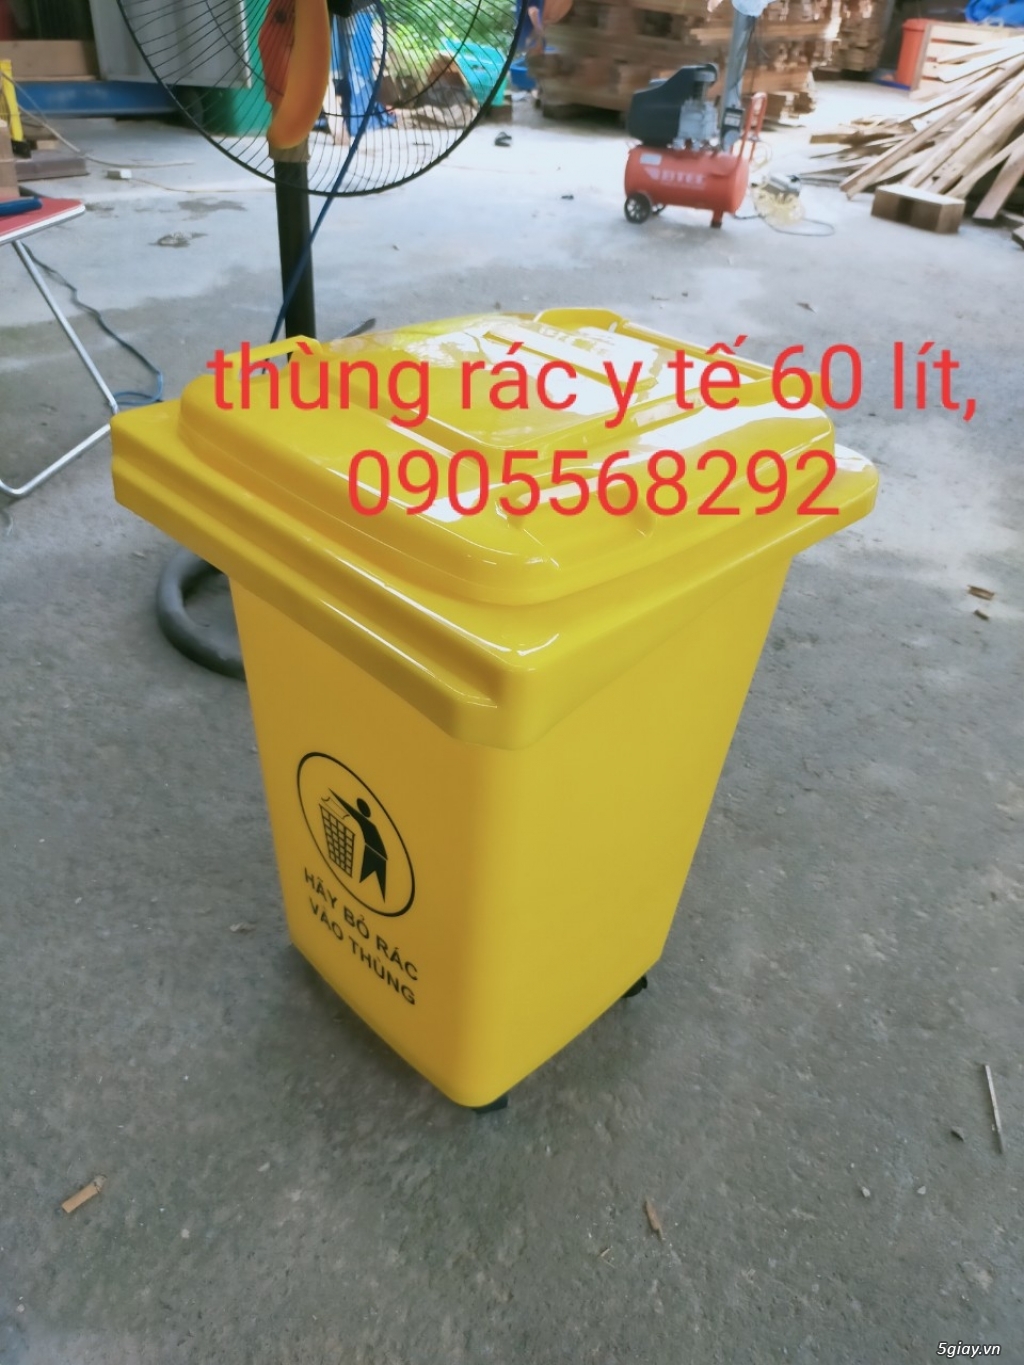 cung cấp thùng rác lớn nhất miền trung 0905568292-0905681595